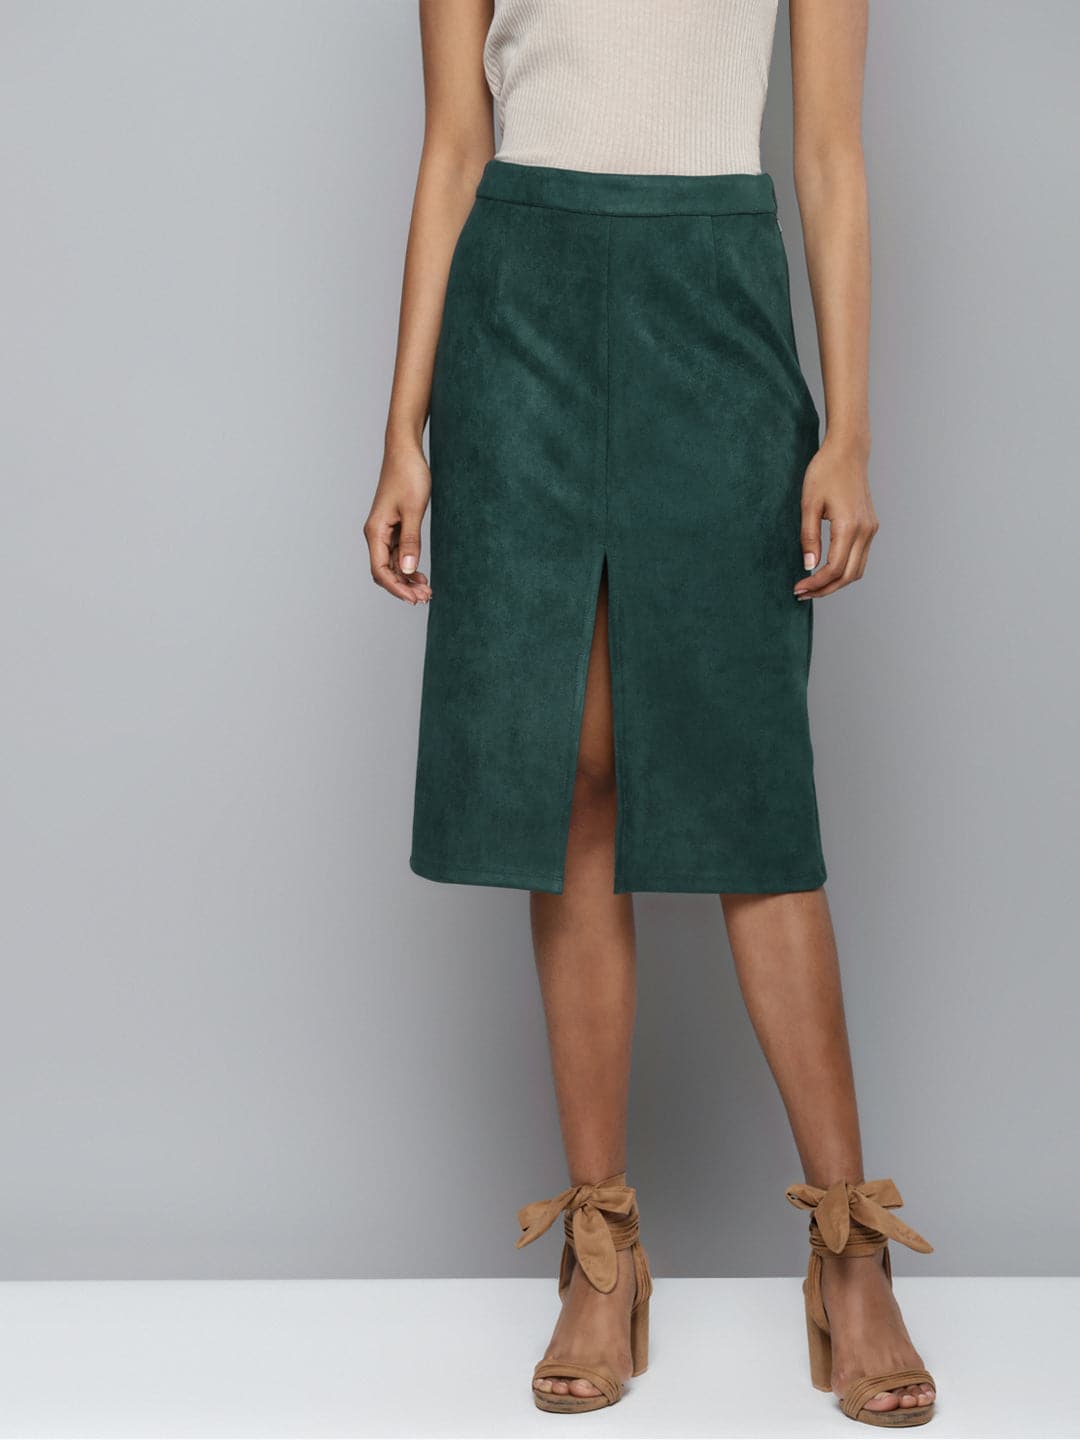 Emerald Green Suede Pencil Skirt-Skirts-SASSAFRAS